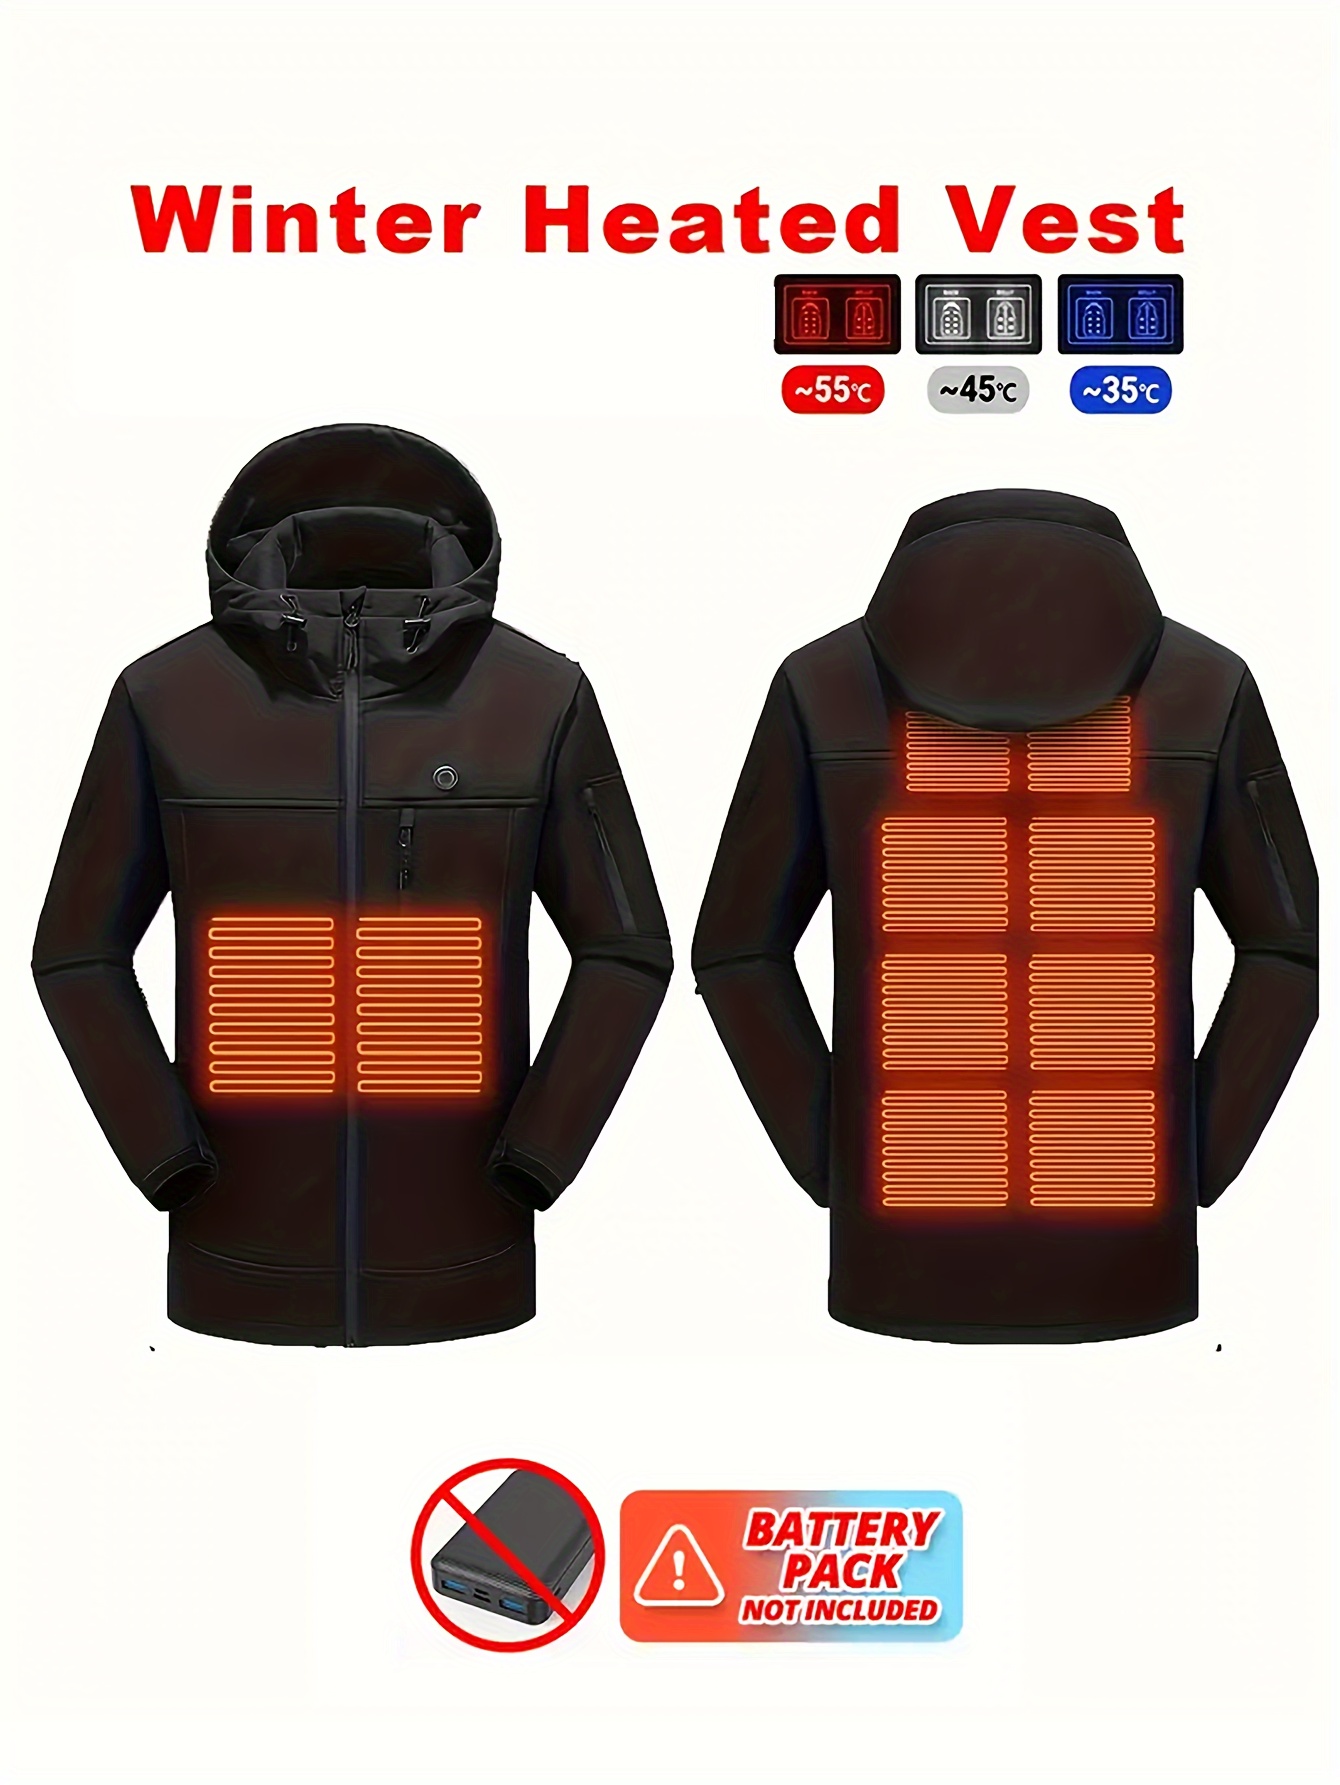 Chaleco calefactado, chaqueta térmica ligera de carga USB con batería  incluida, ropa de calefacción para hombres y mujeres, Negro